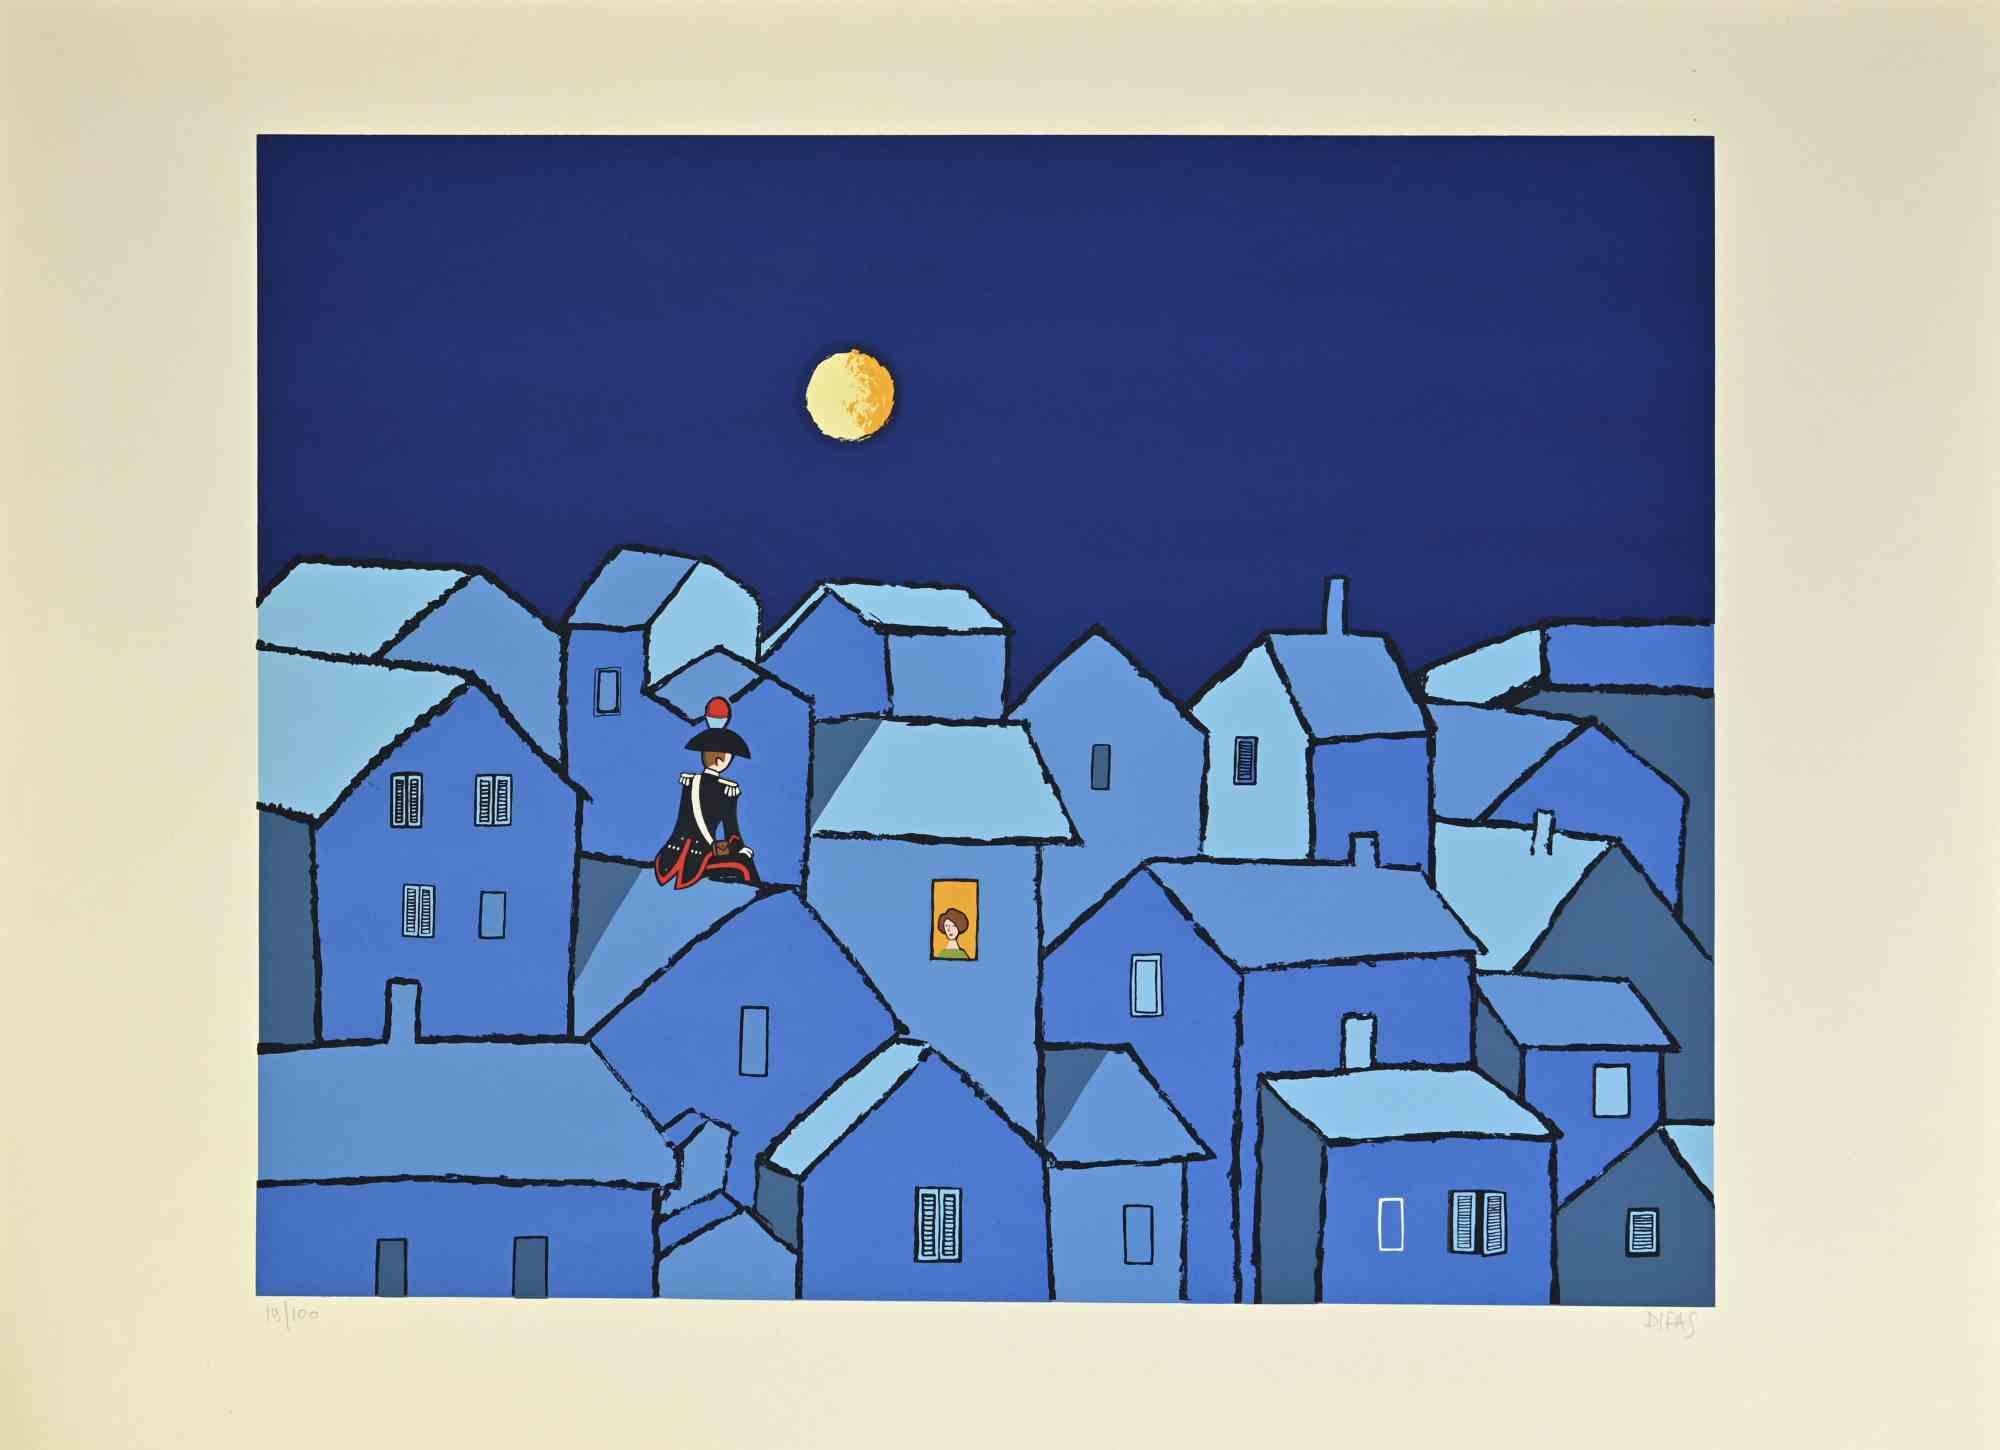 Night Meetings ist ein zeitgenössisches Kunstwerk, das der Künstler Dipas in den 1970er Jahren geschaffen hat.

Gemischter farbiger Siebdruck.

Handsigniert am unteren rechten Rand.

Am linken unteren Rand nummeriert.

Auflage von 19/100.